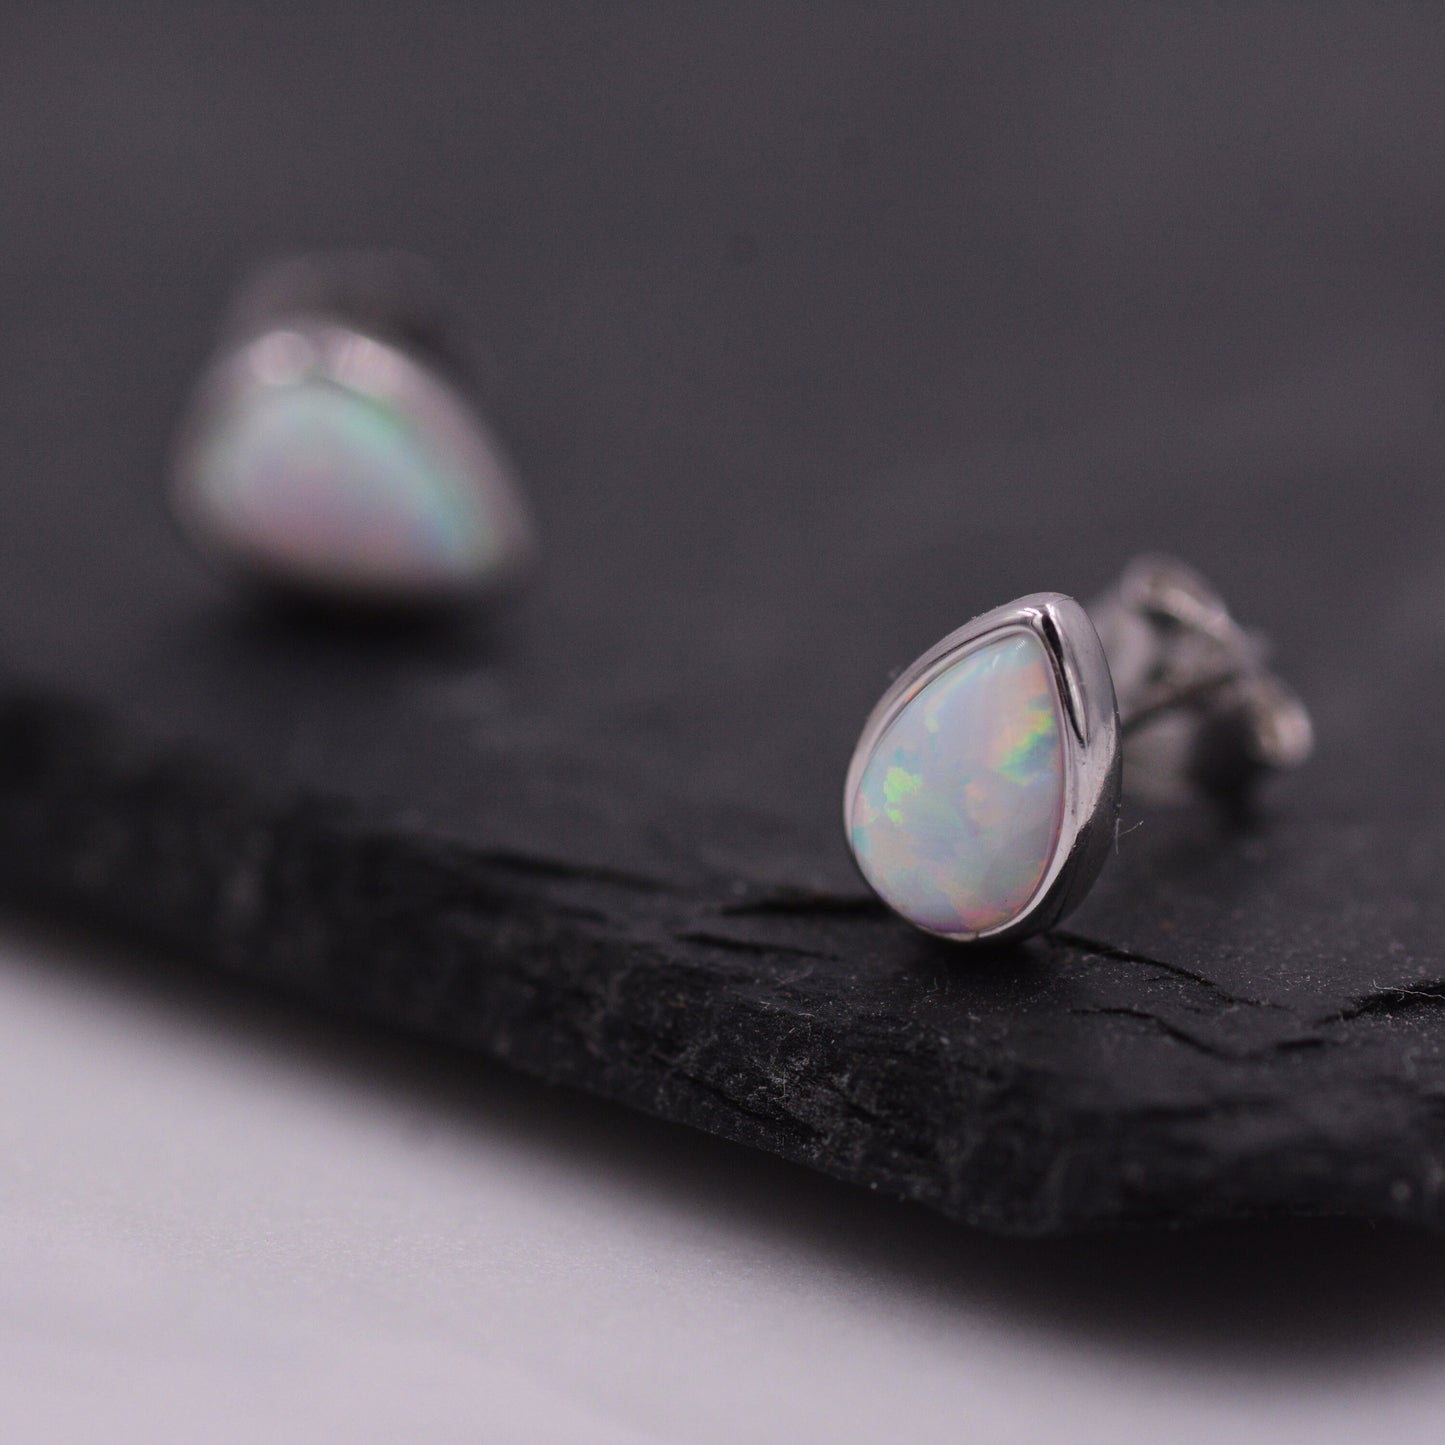 Opal Droplet Stud Earrings in Sterling Silver, Blue or White, Teardrop Opal, Pear Cut Opal Semi-precious Jewellery  R99